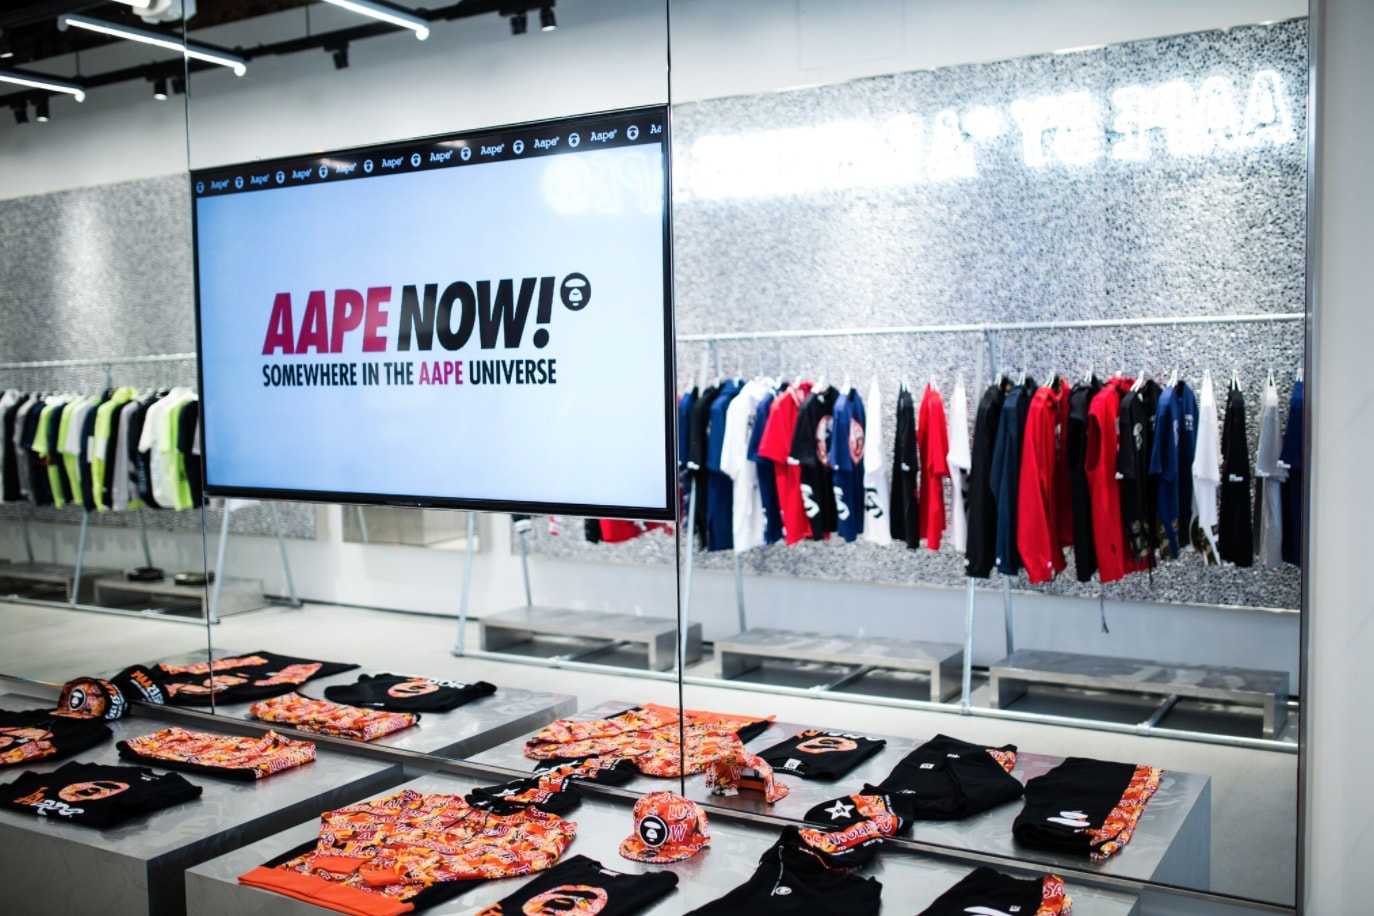 Take a Look Inside AAPE's LA Store